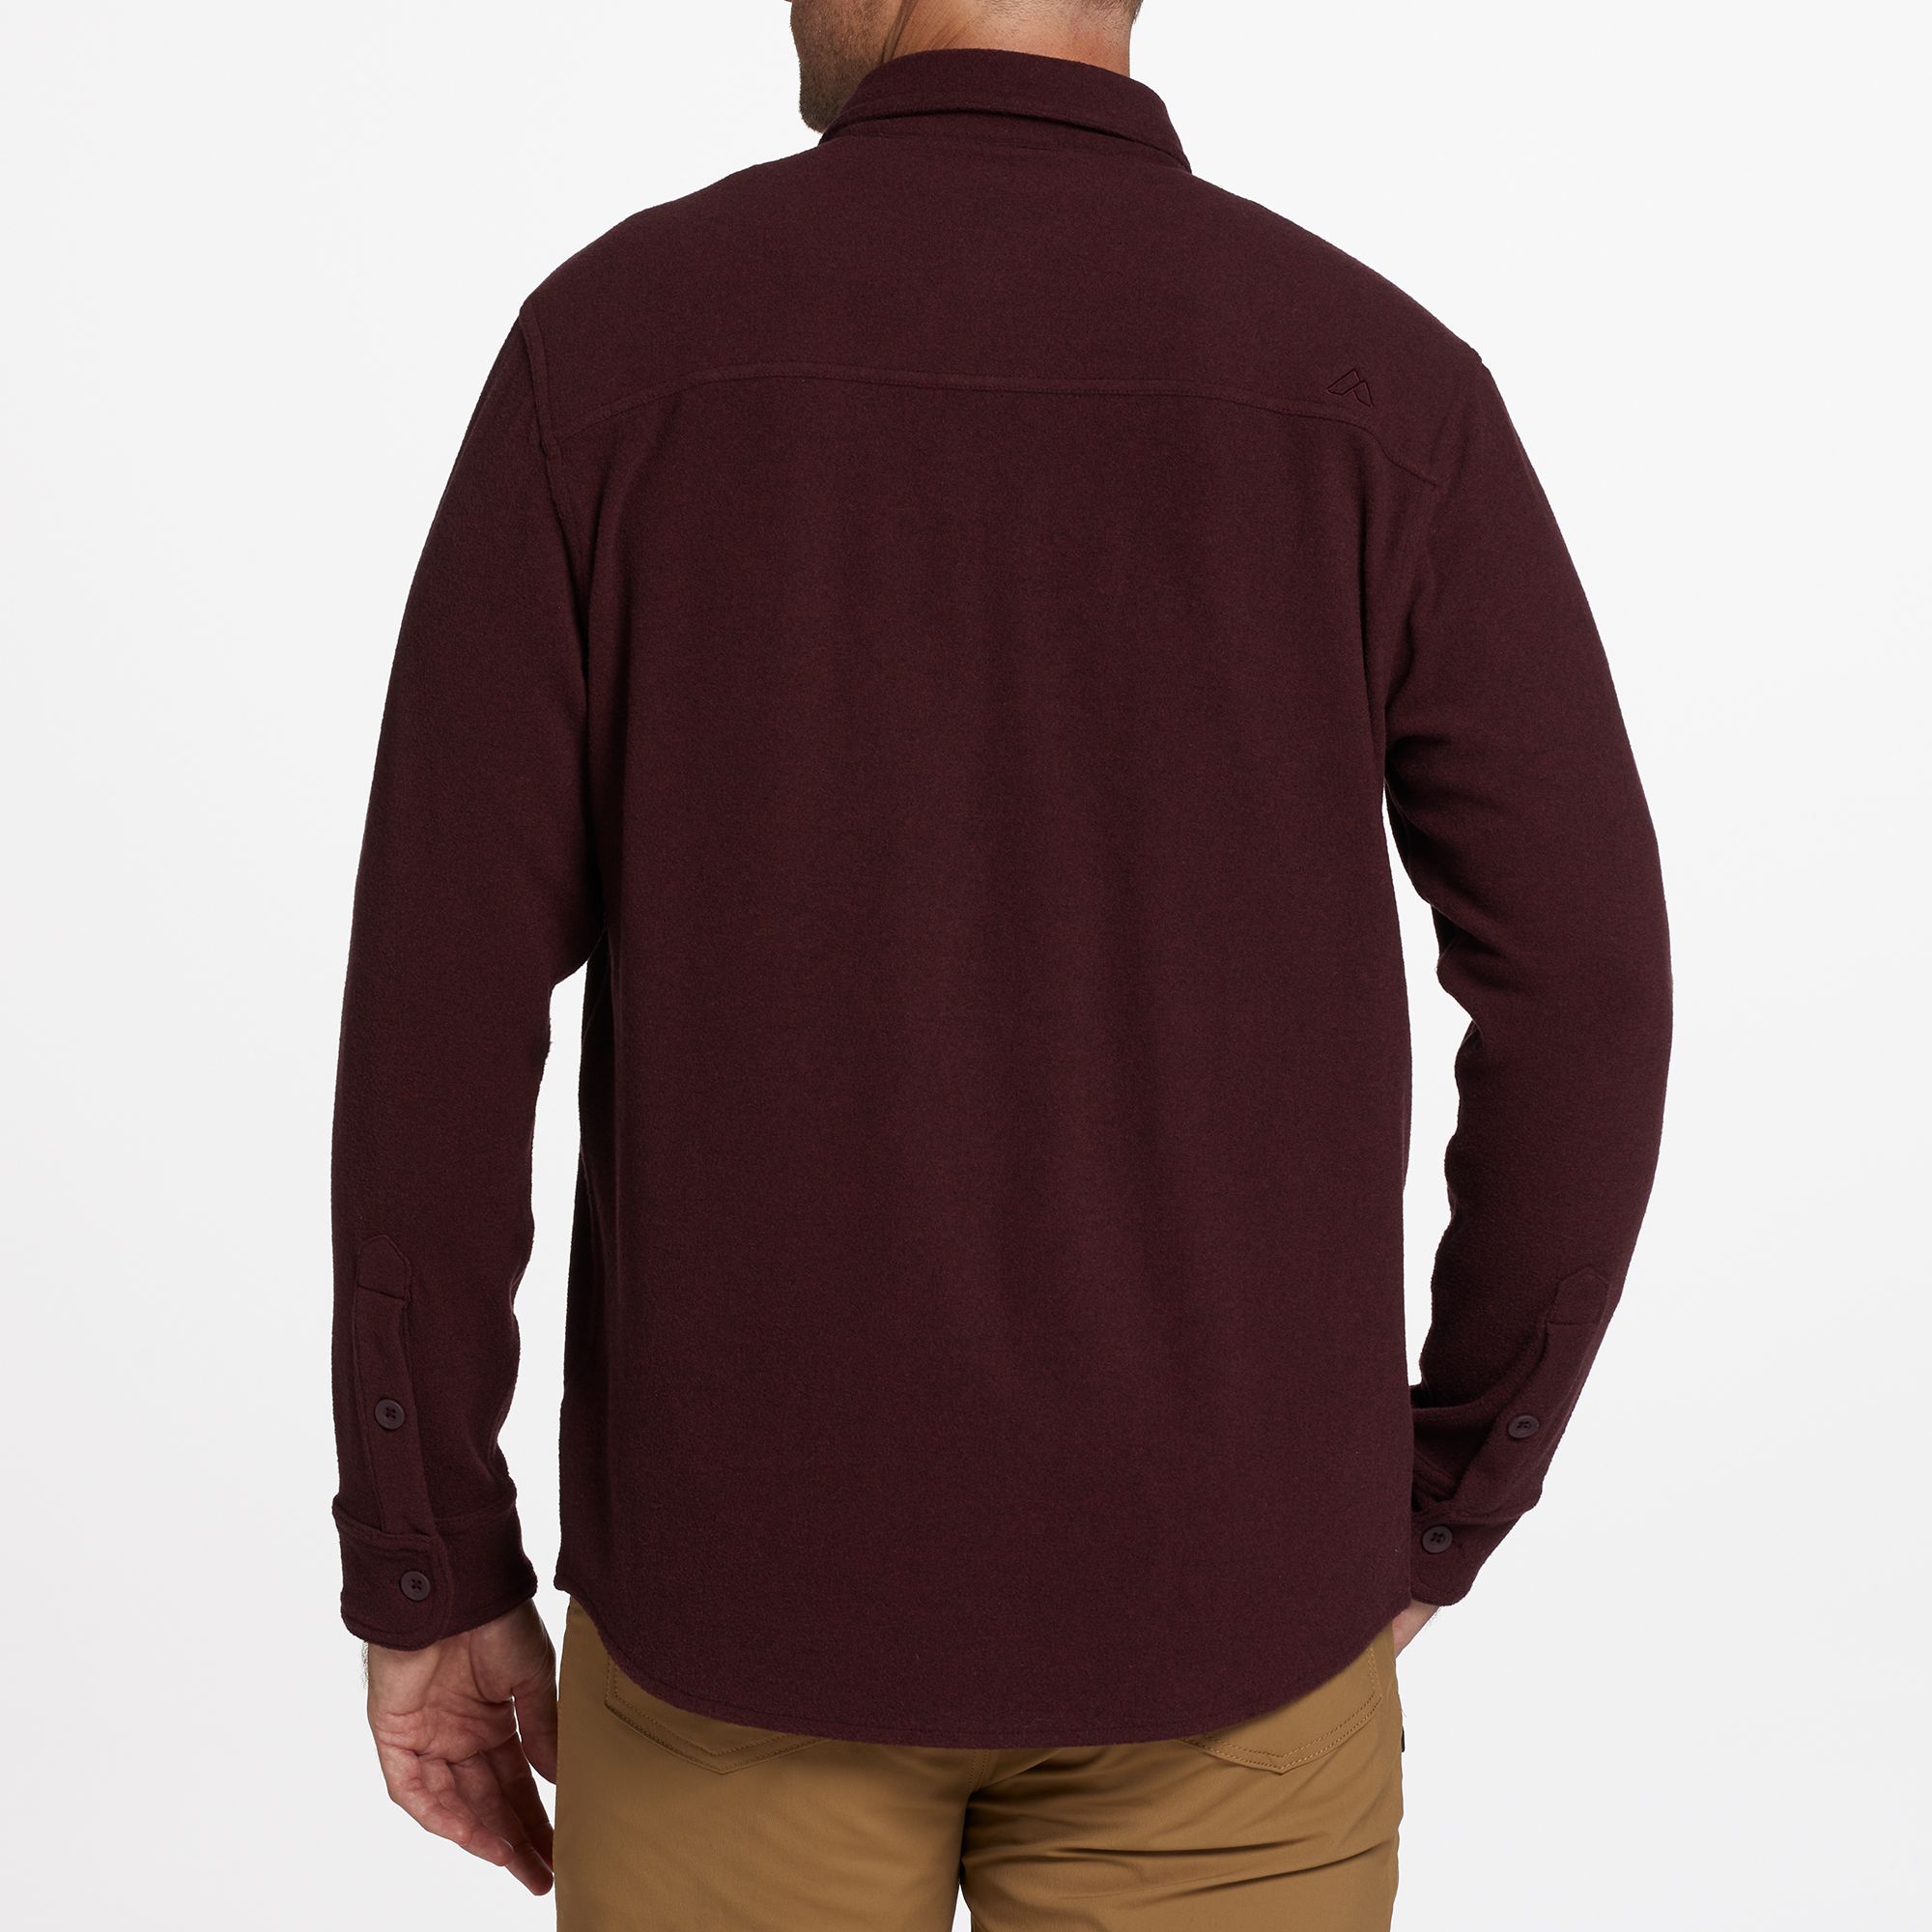 Alpine Design Men's Wanderful Long Sleeve Button-Up Shirt